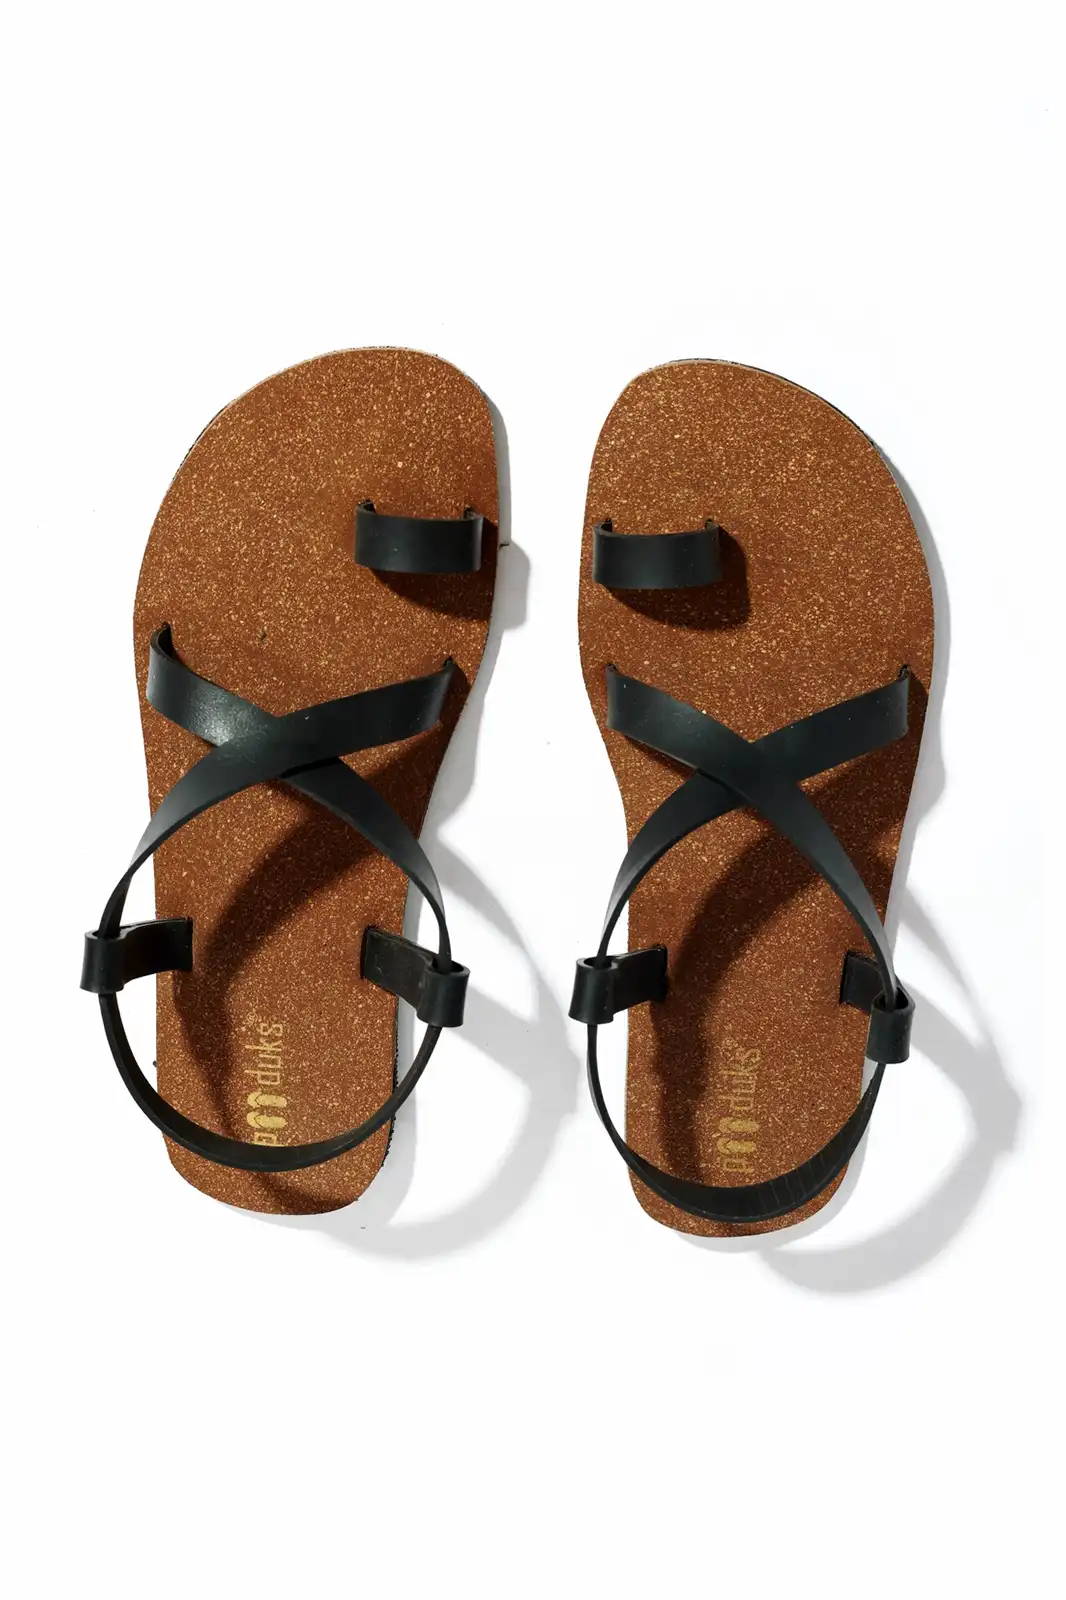 PAADUKS -Buy Vegan Footwear Online for Men & Women| Handmade Footwear